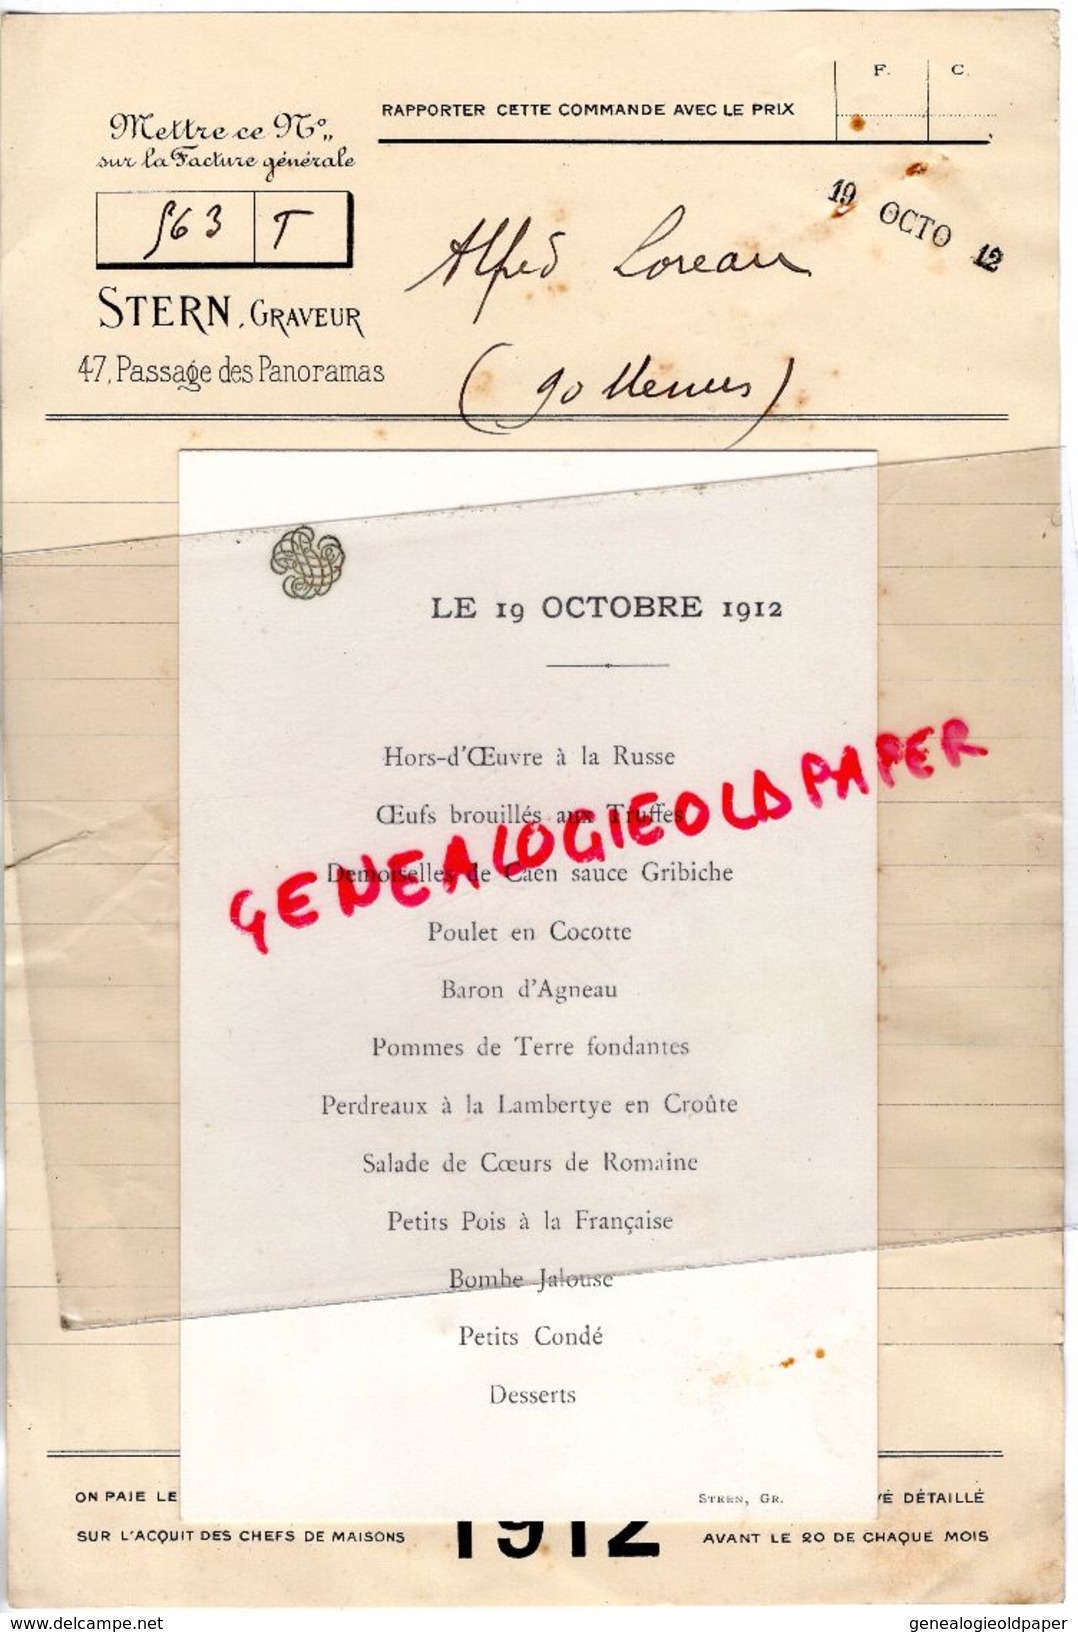 75- PARIS- COMMANDE CARTE MENU DE ALFRED LOREAU A STERN GRAVEUR -47 PASSAGE PANORAMAS- 1912 IMPRIMERIE - Imprimerie & Papeterie